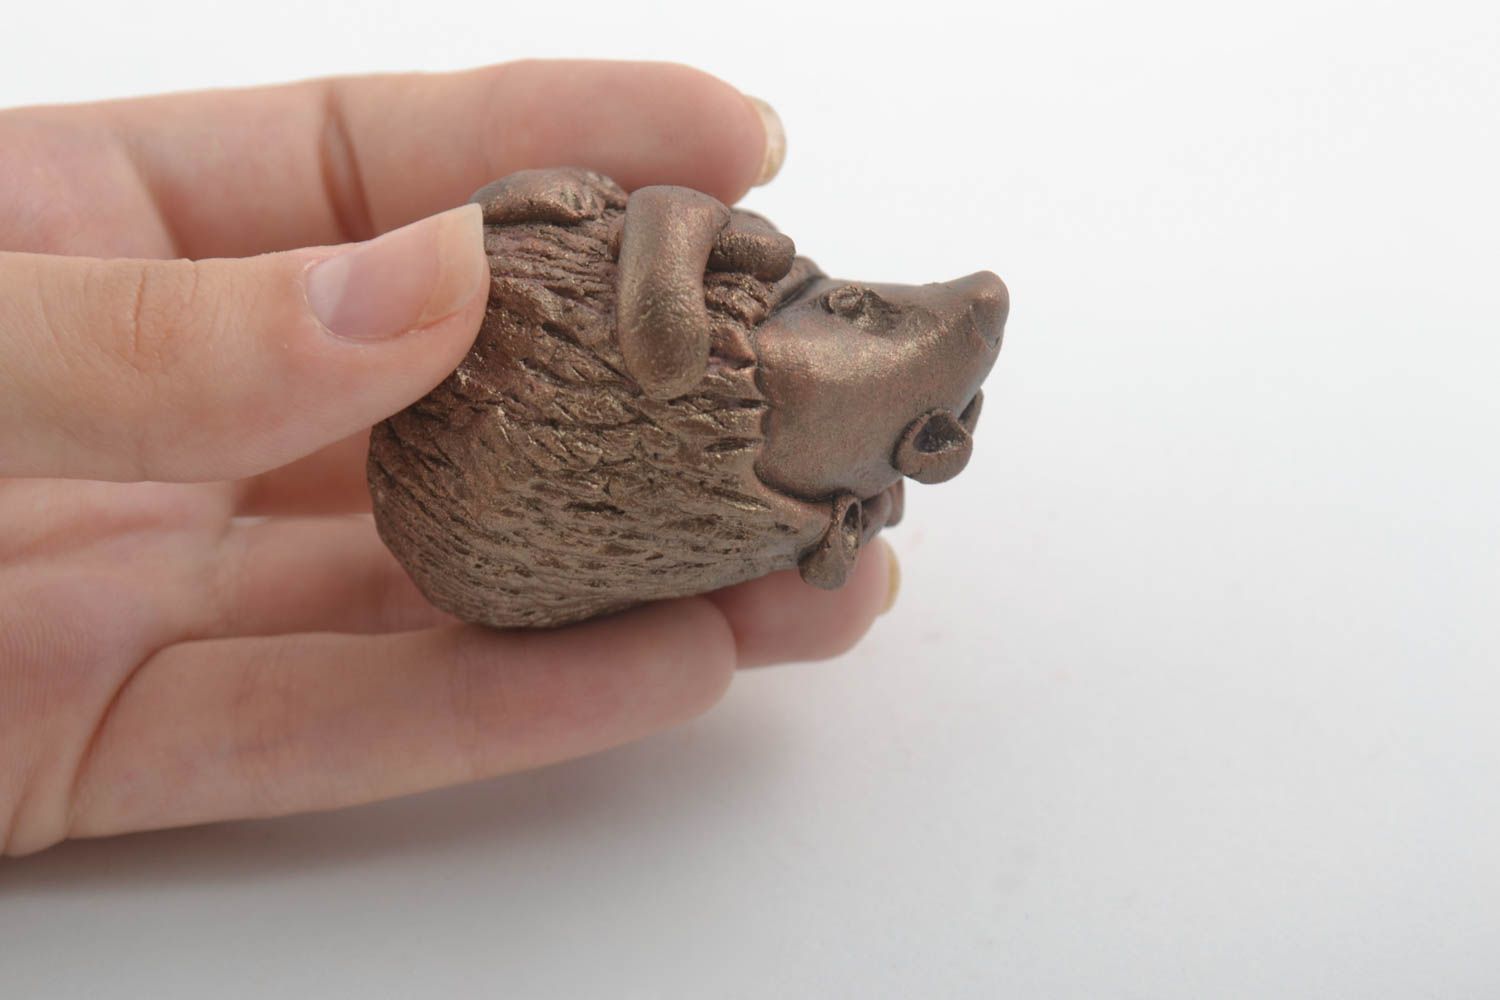 Статуэтка глиняная скульптура ручной работы фигурка животного оригинальная фото 4